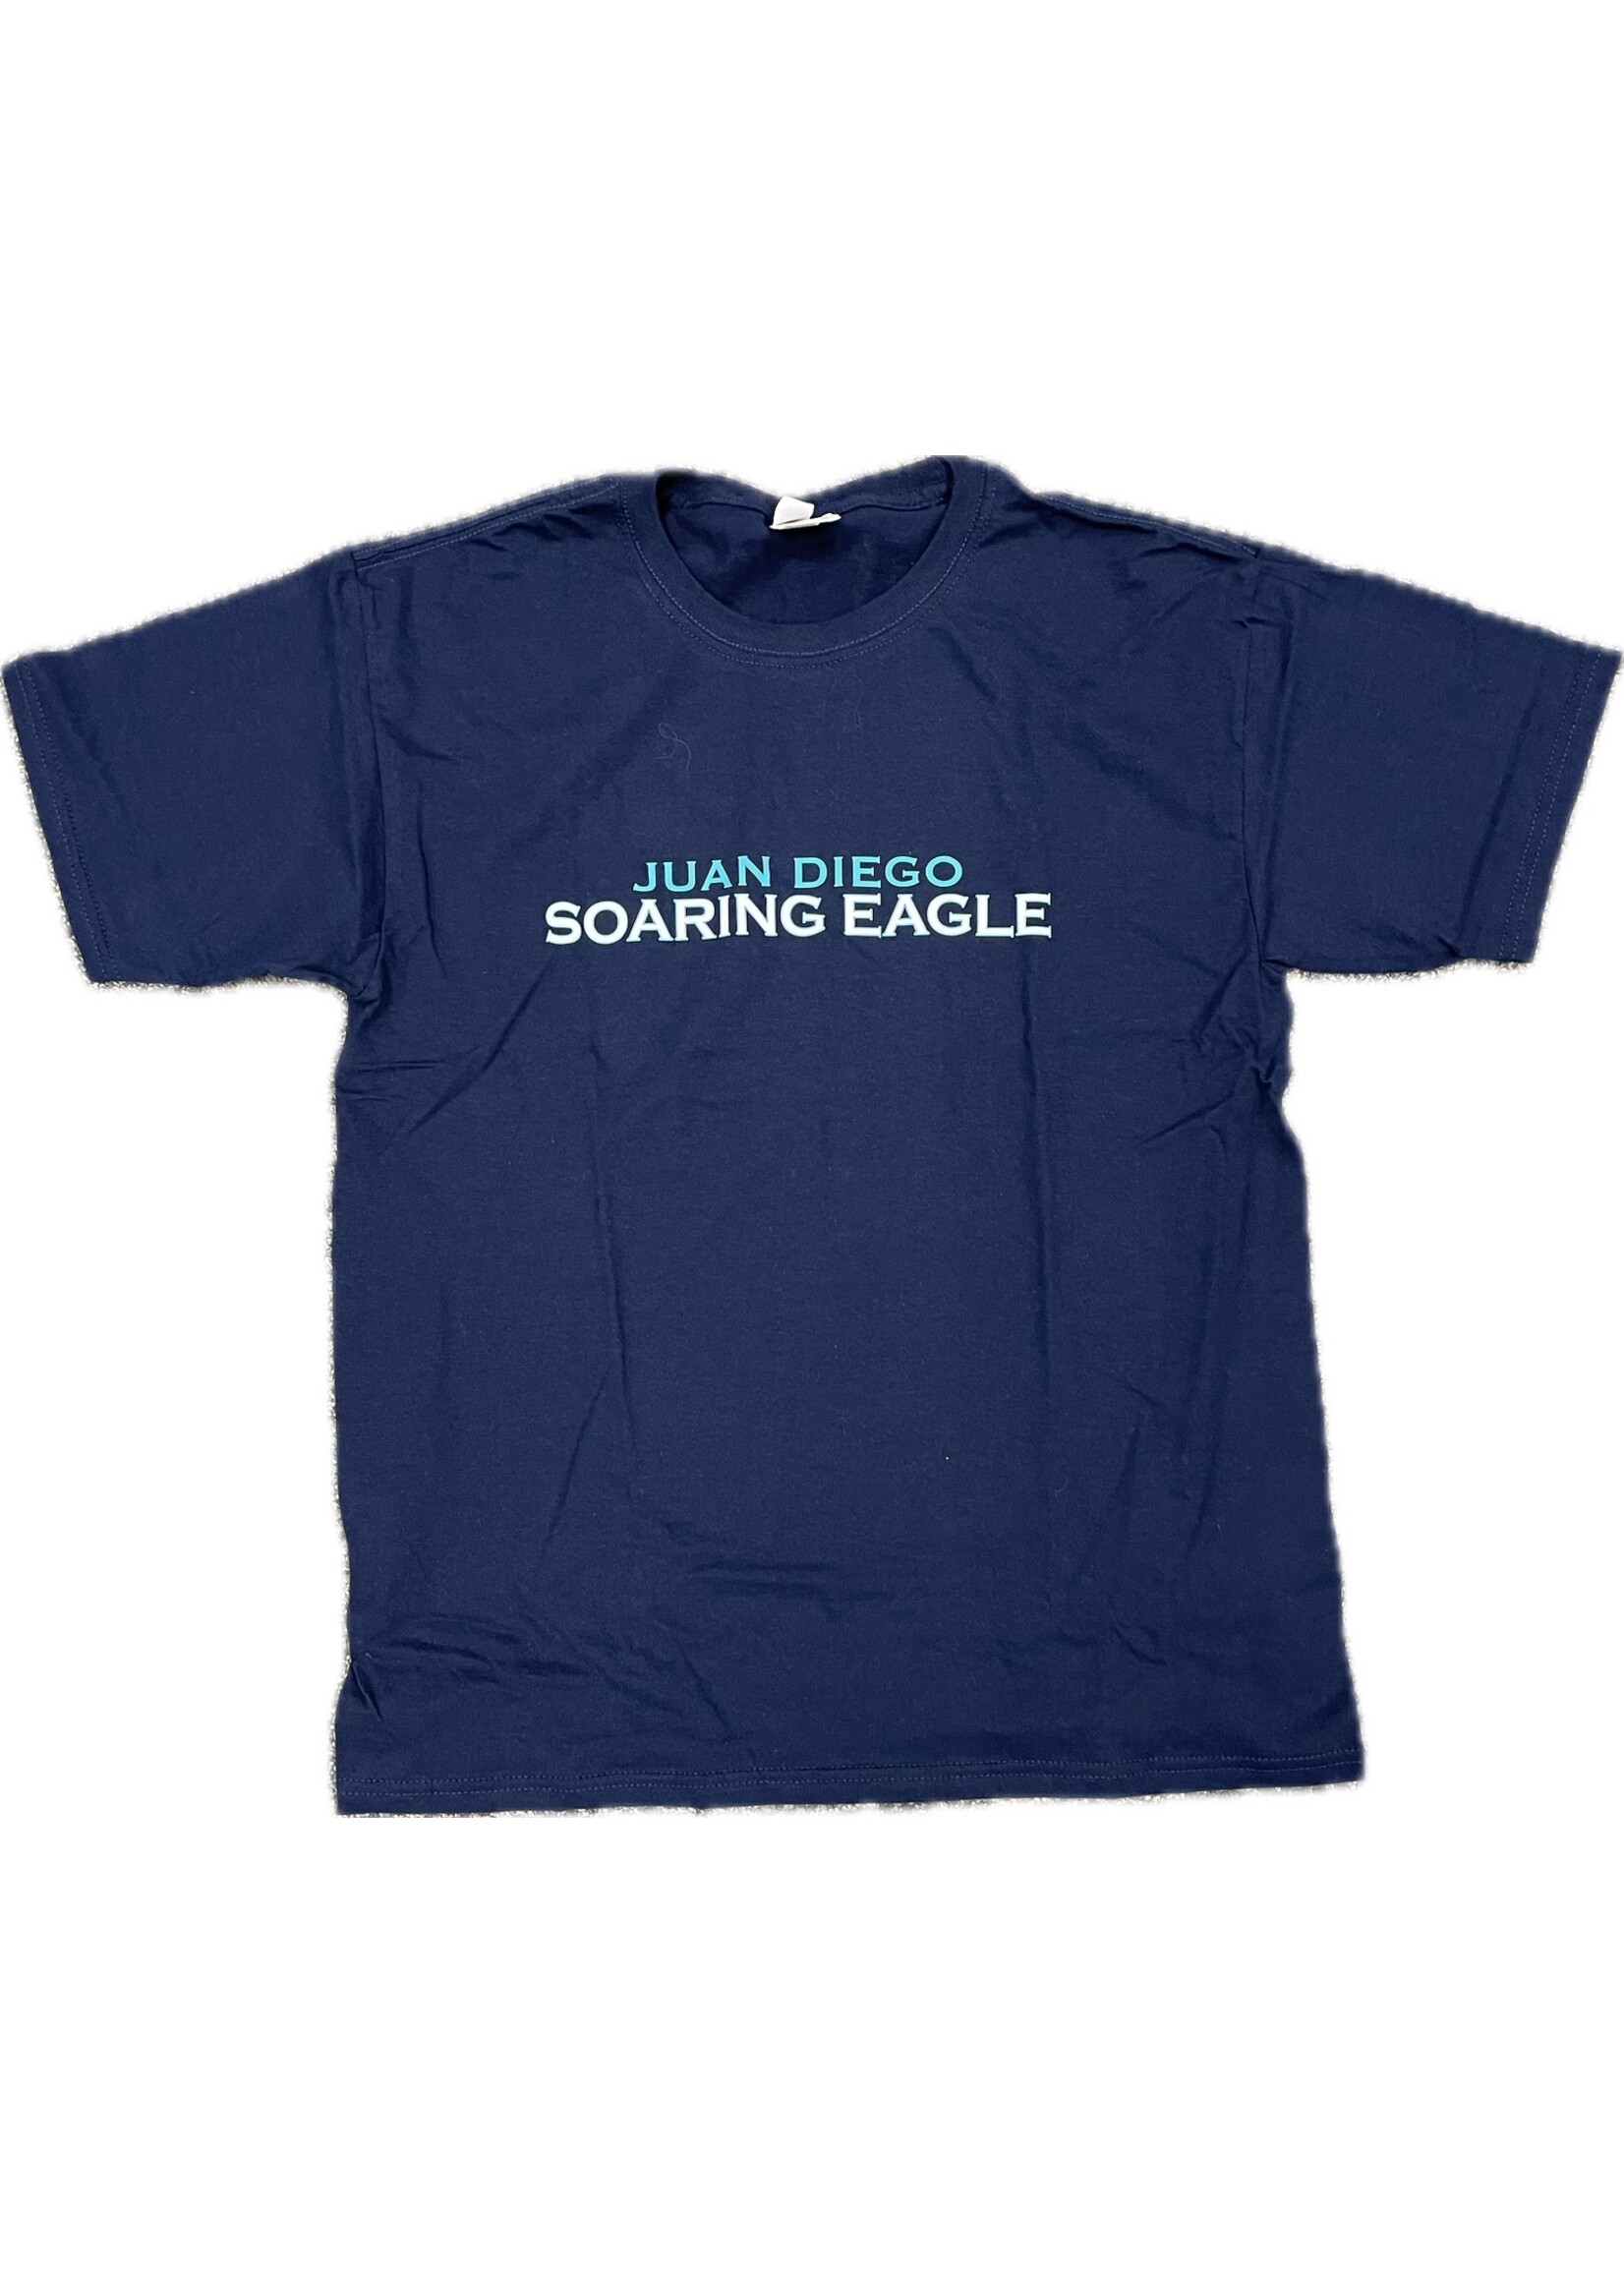 NON-UNIFORM Juan Diego Soaring Eagle Unisex s/s t-shirt